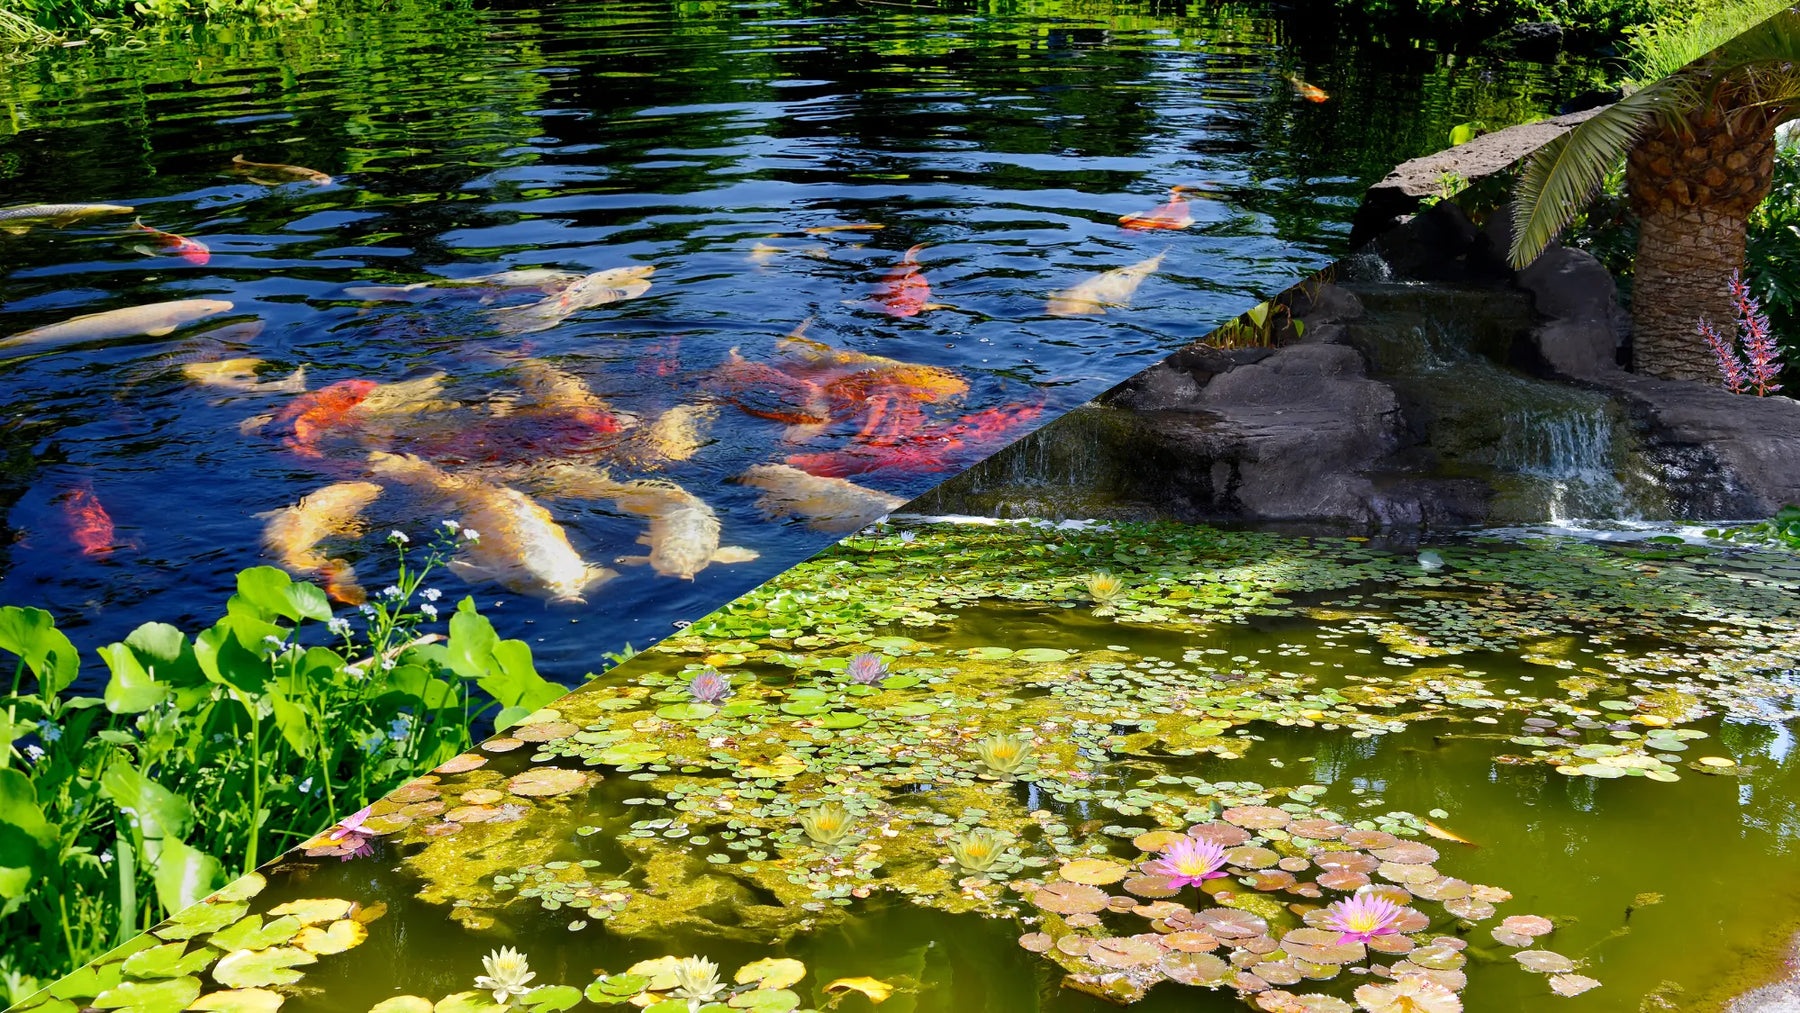 Fish Pond or Water Garden?